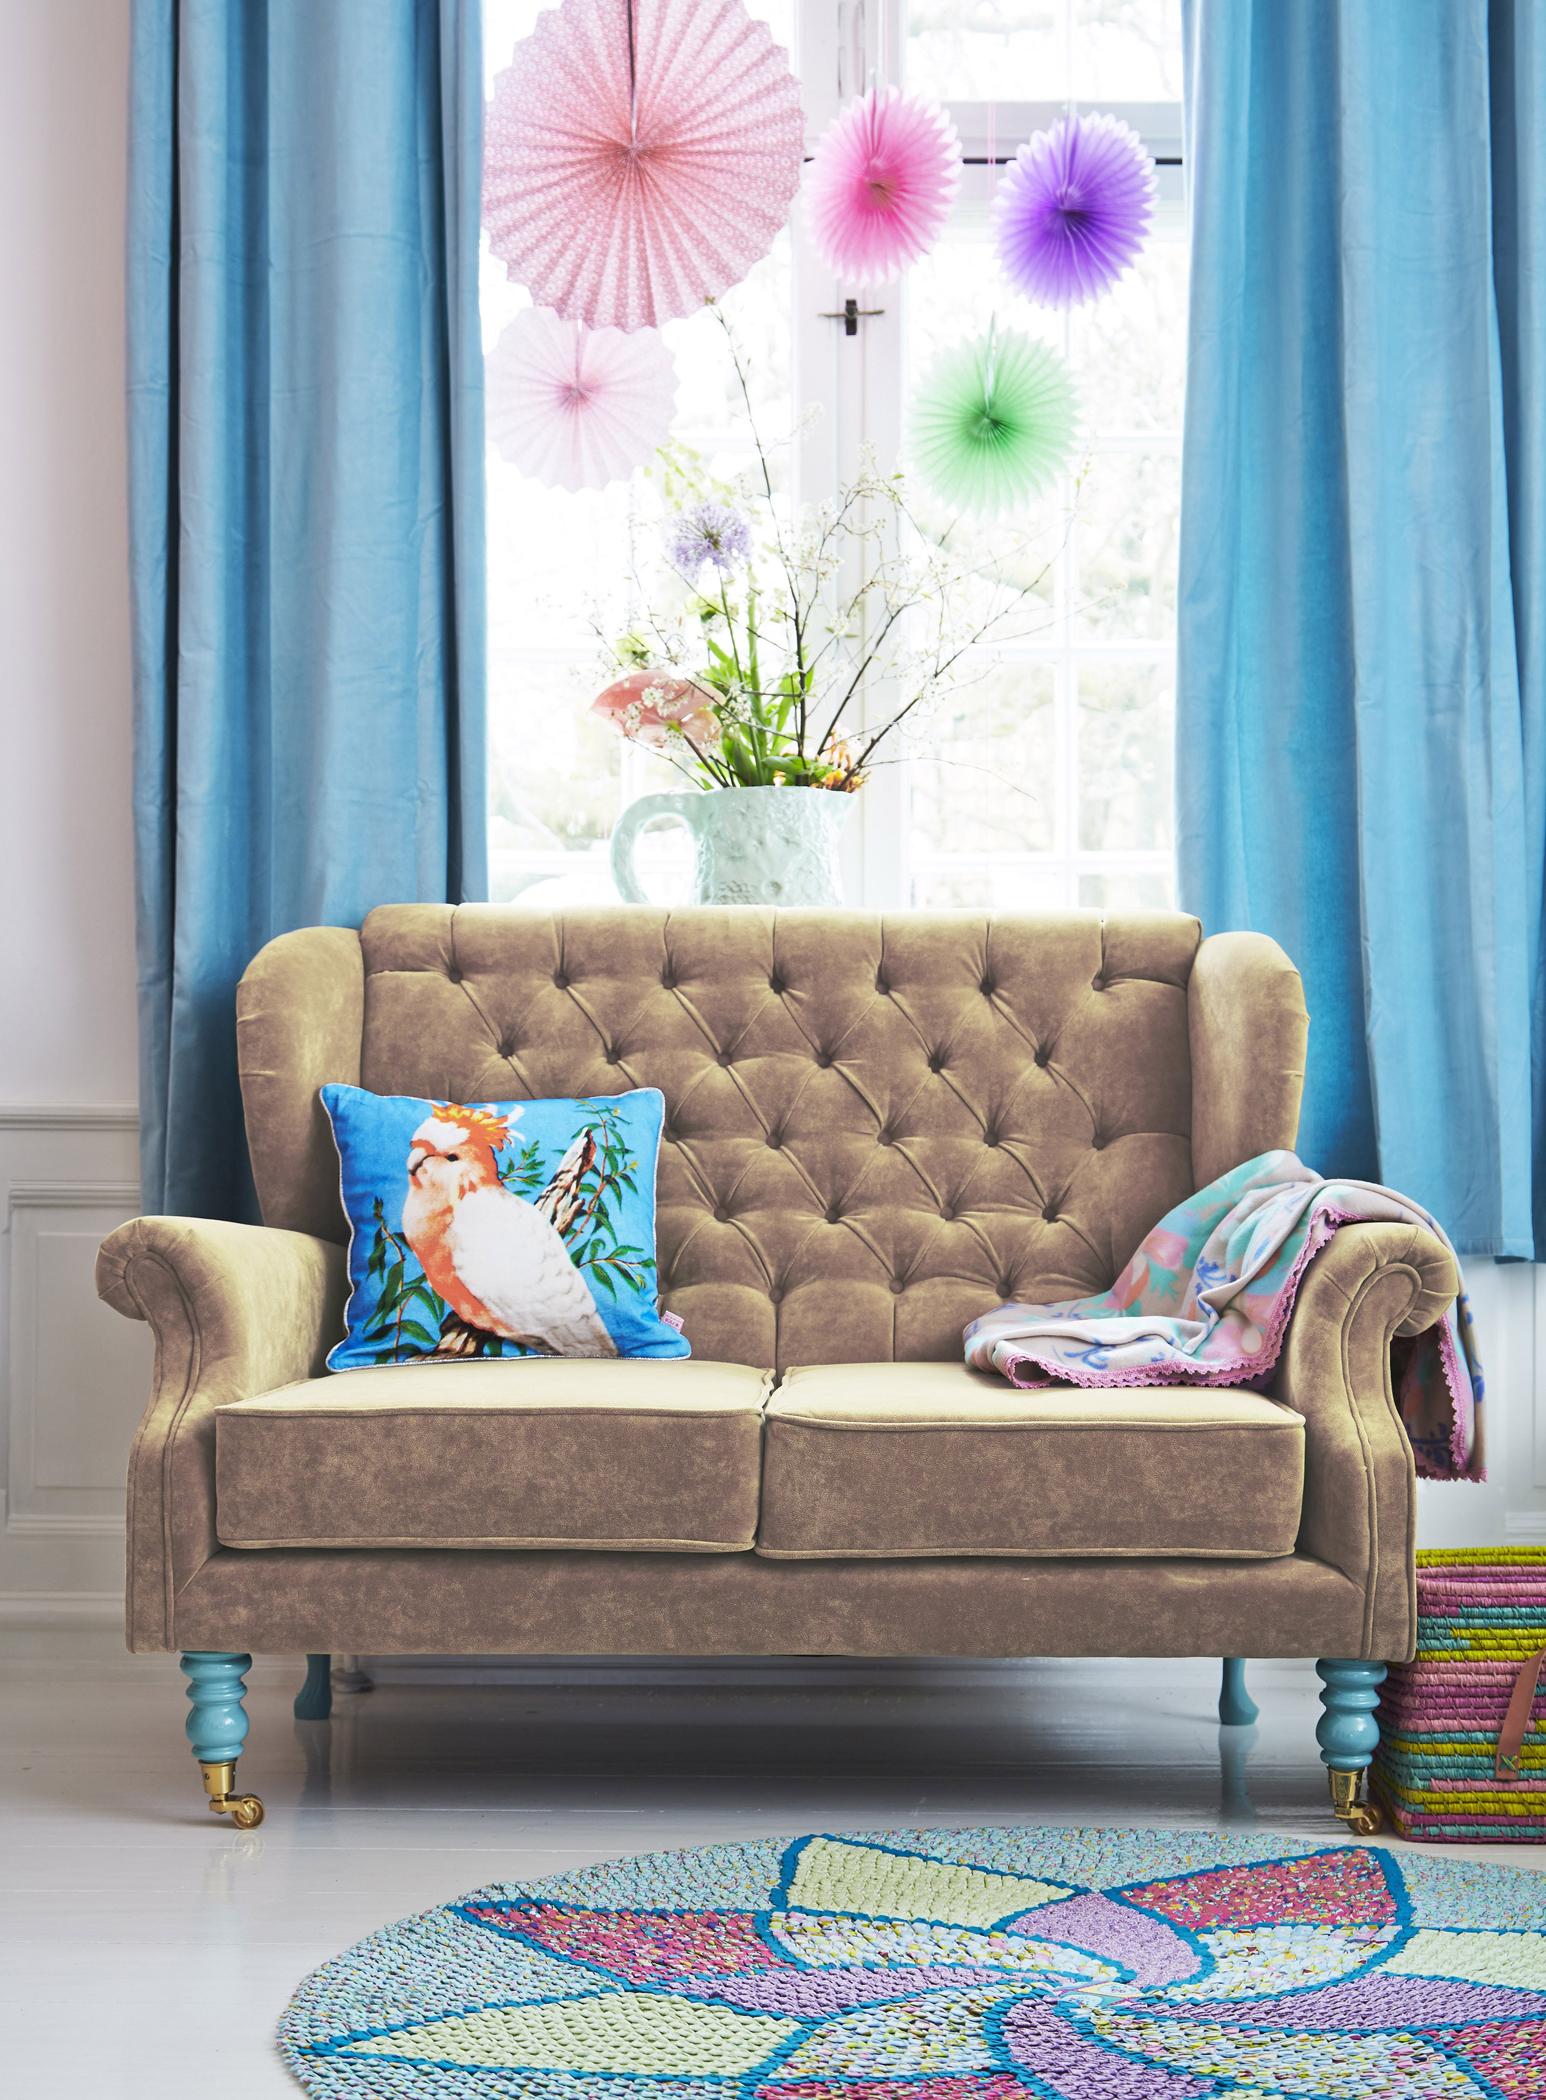 Bunte Papierblumen über Samt-Sofa #bastelidee #teppich #retro #wohnzimmer #diy #vorhang #bunterteppich #runderteppich #sofa #diydeko ©Rice